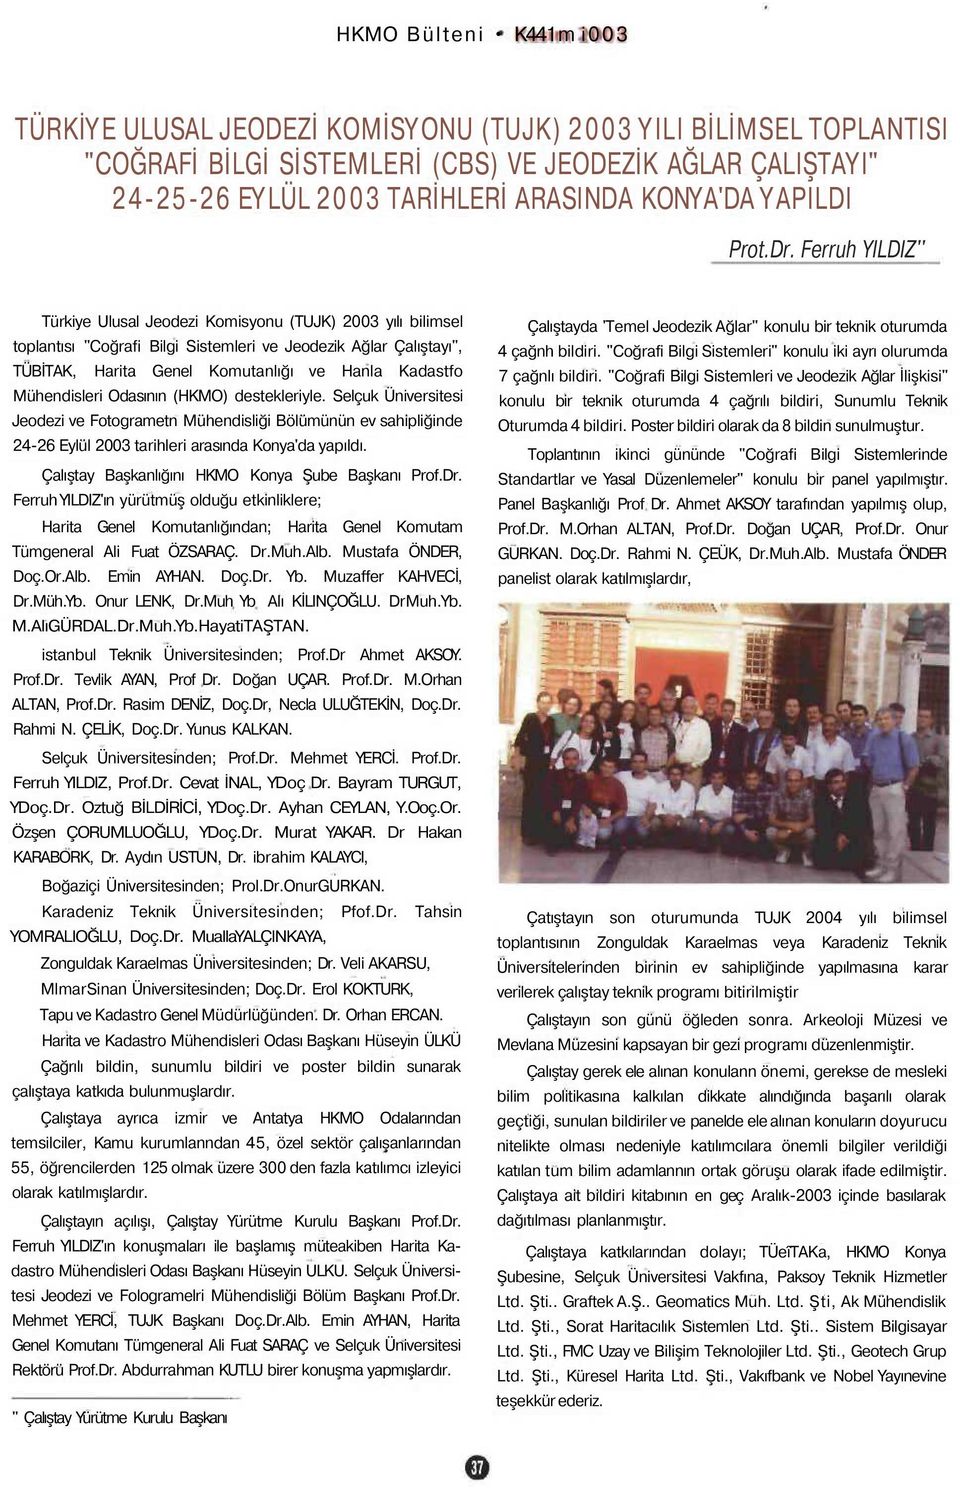 Ferruh YILDIZ'' Türkiye Ulusal Jeodezi Komisyonu (TUJK) 2003 yılı bilimsel toplantısı "Coğrafi Bilgi Sistemleri ve Jeodezik Ağlar Çalıştayı", TÜBİTAK, Harita Genel Komutanlığı ve Hanla Kadastfo